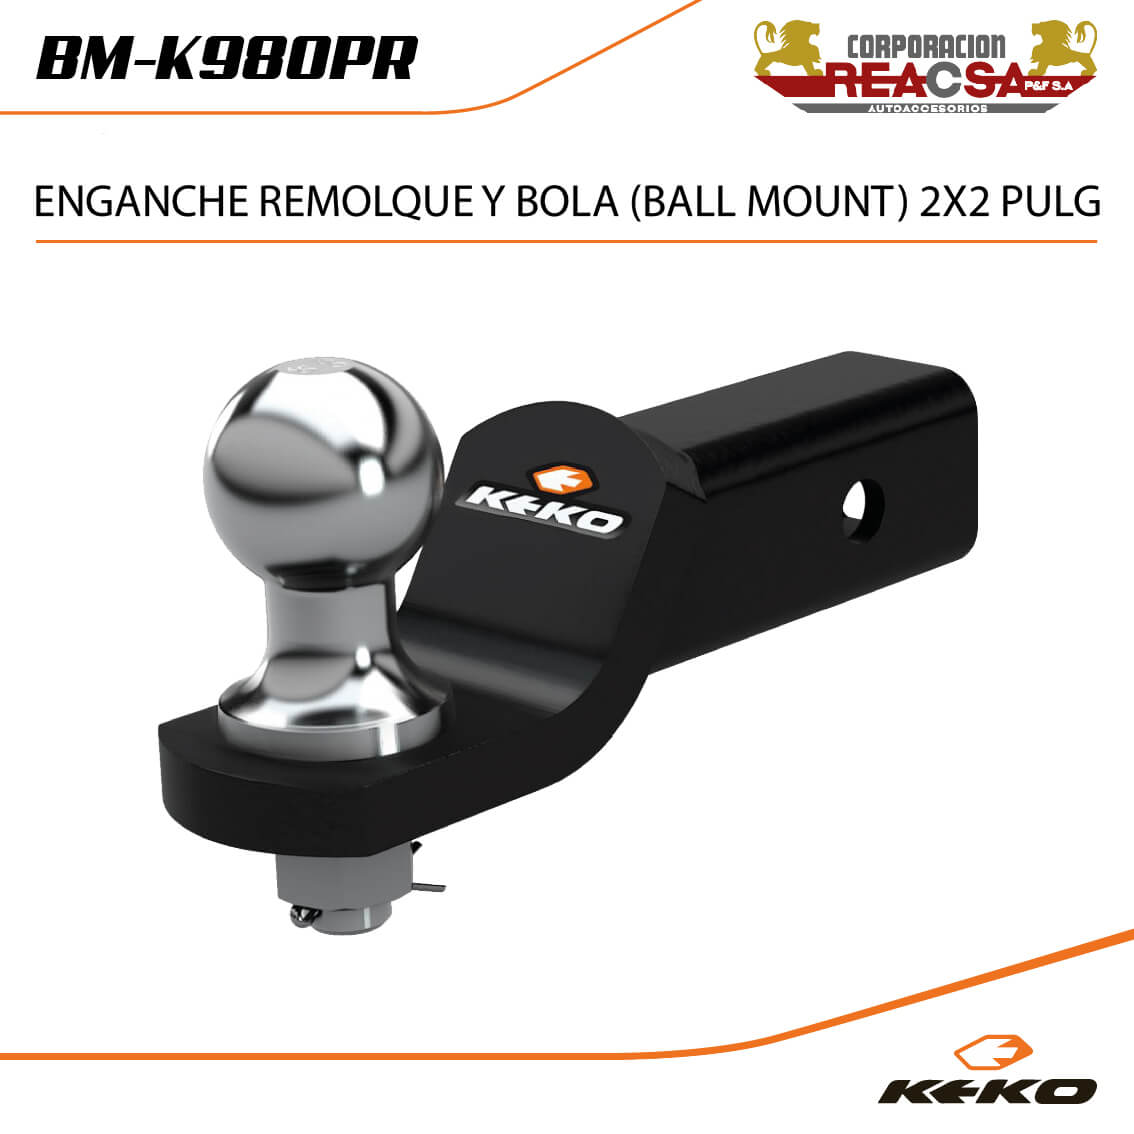 ENGANCHE REMOLQUE Y BOLA (BALL MOUNT) 2X2 PULG - REACSA